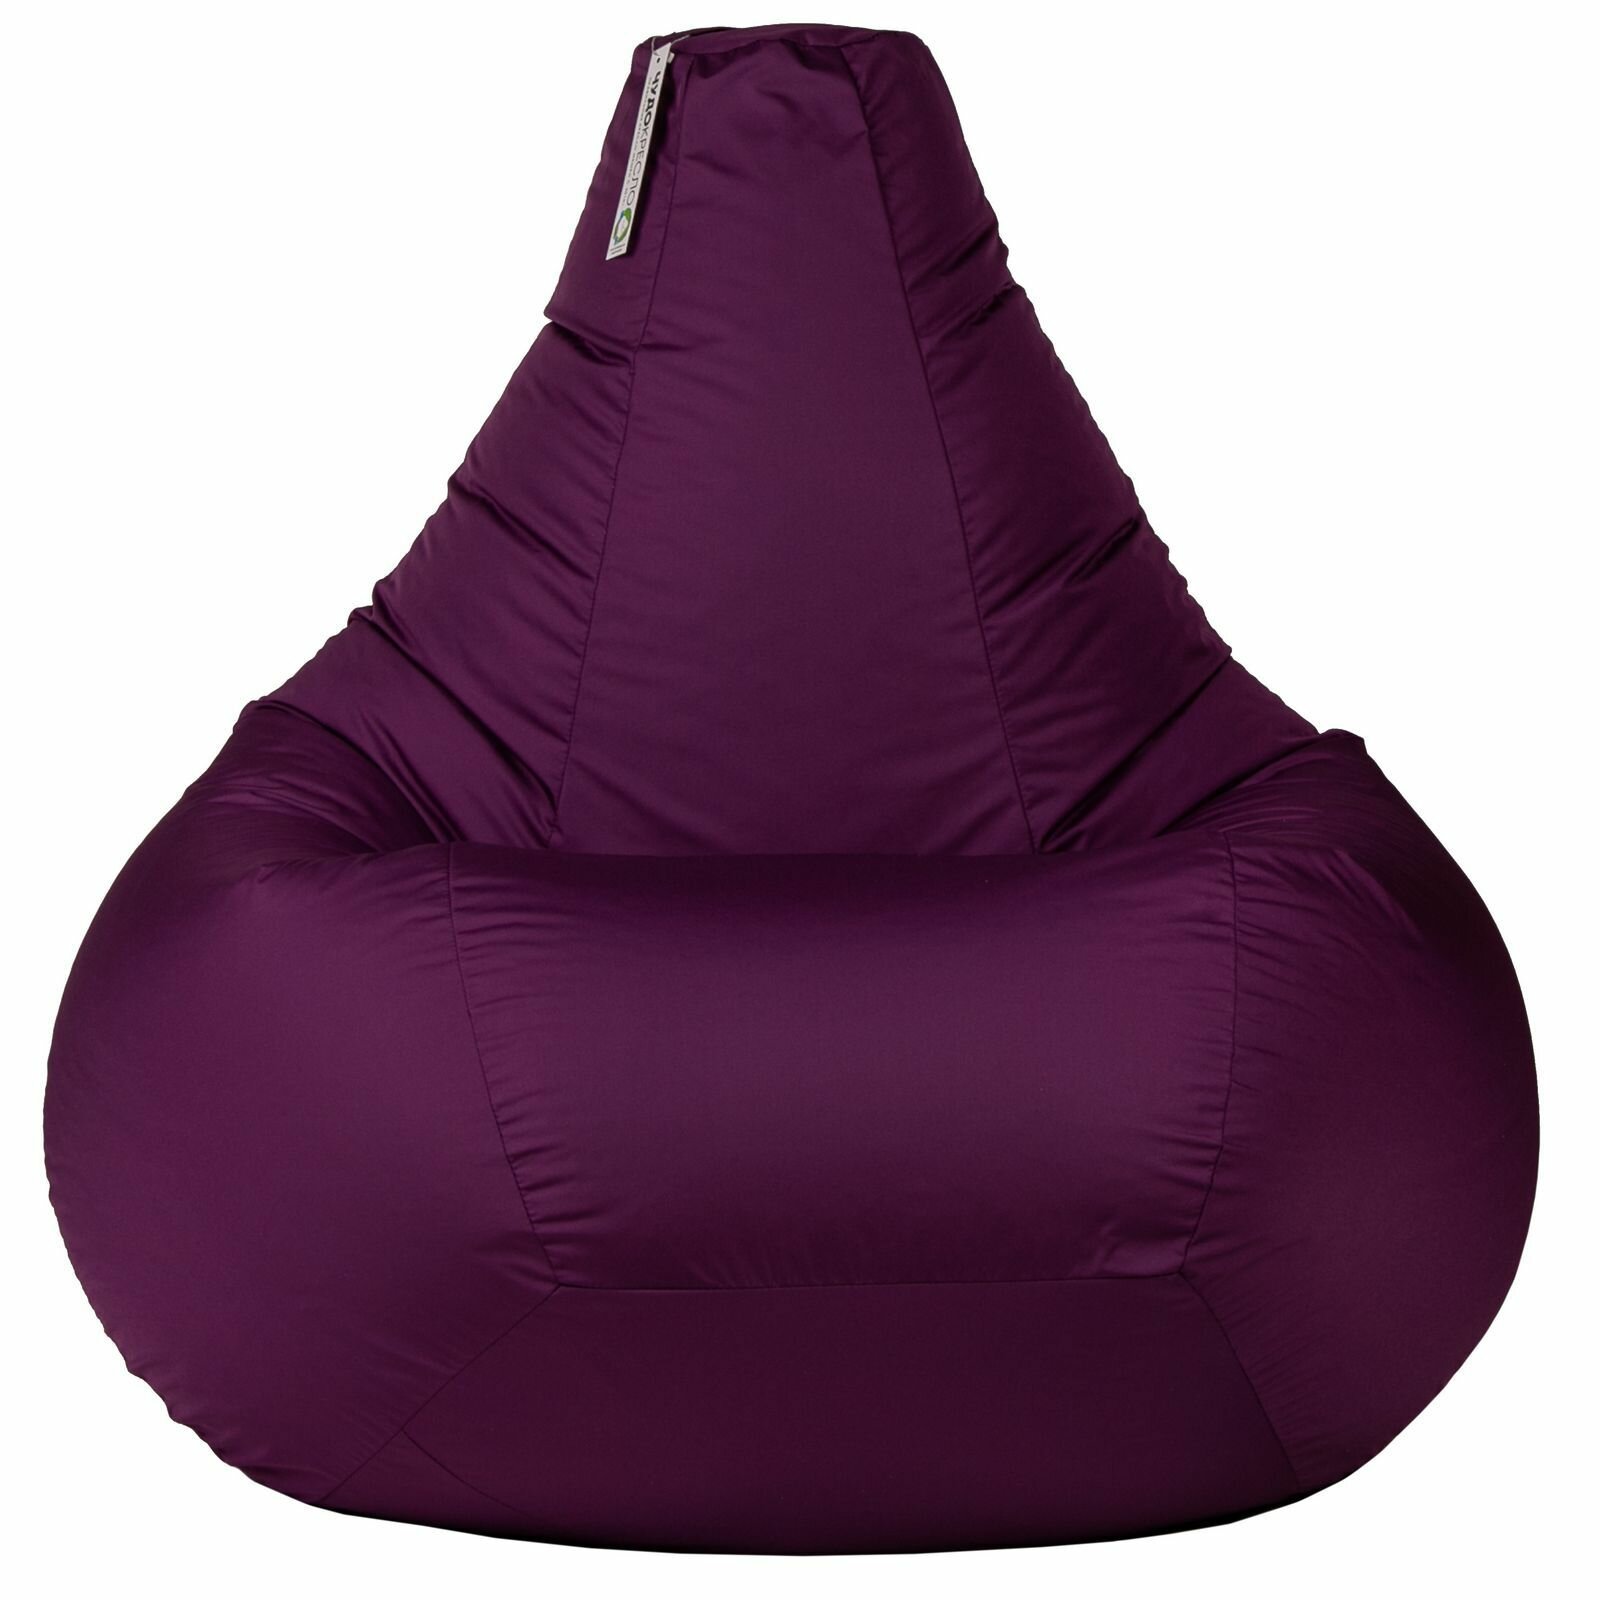 Кресло мешок Нейлон фиолетовый 140*90 размер XXXL кресло груша кресло мешок детское кресло-мешок для улицы и дома в детскую мягкое кресло